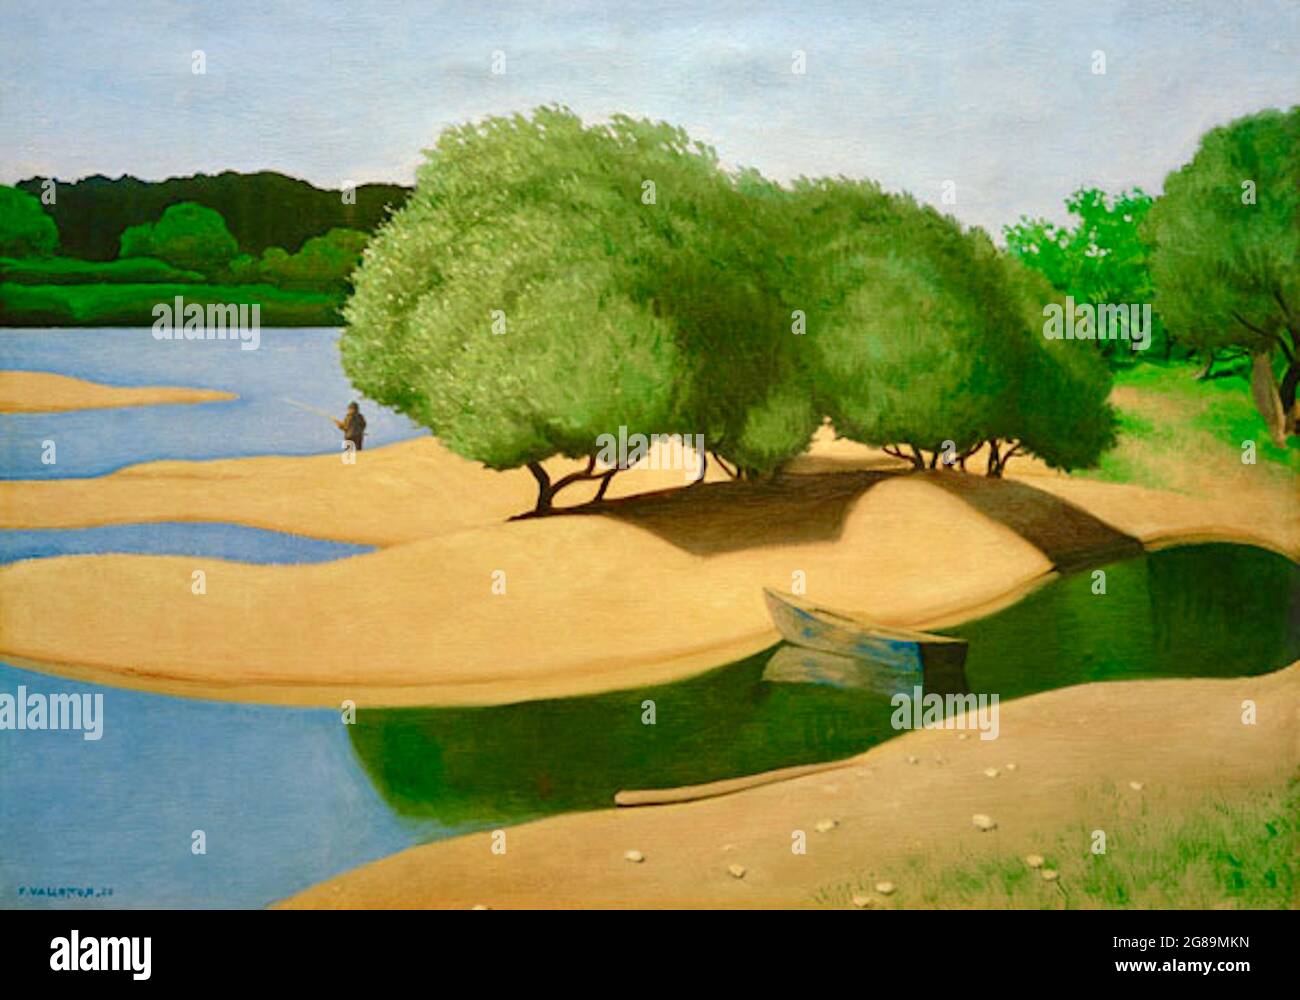 Félix Vallotton artwork entitled Sandbanks on the Loire or Bancs de Sable sur la Loire. Stock Photo